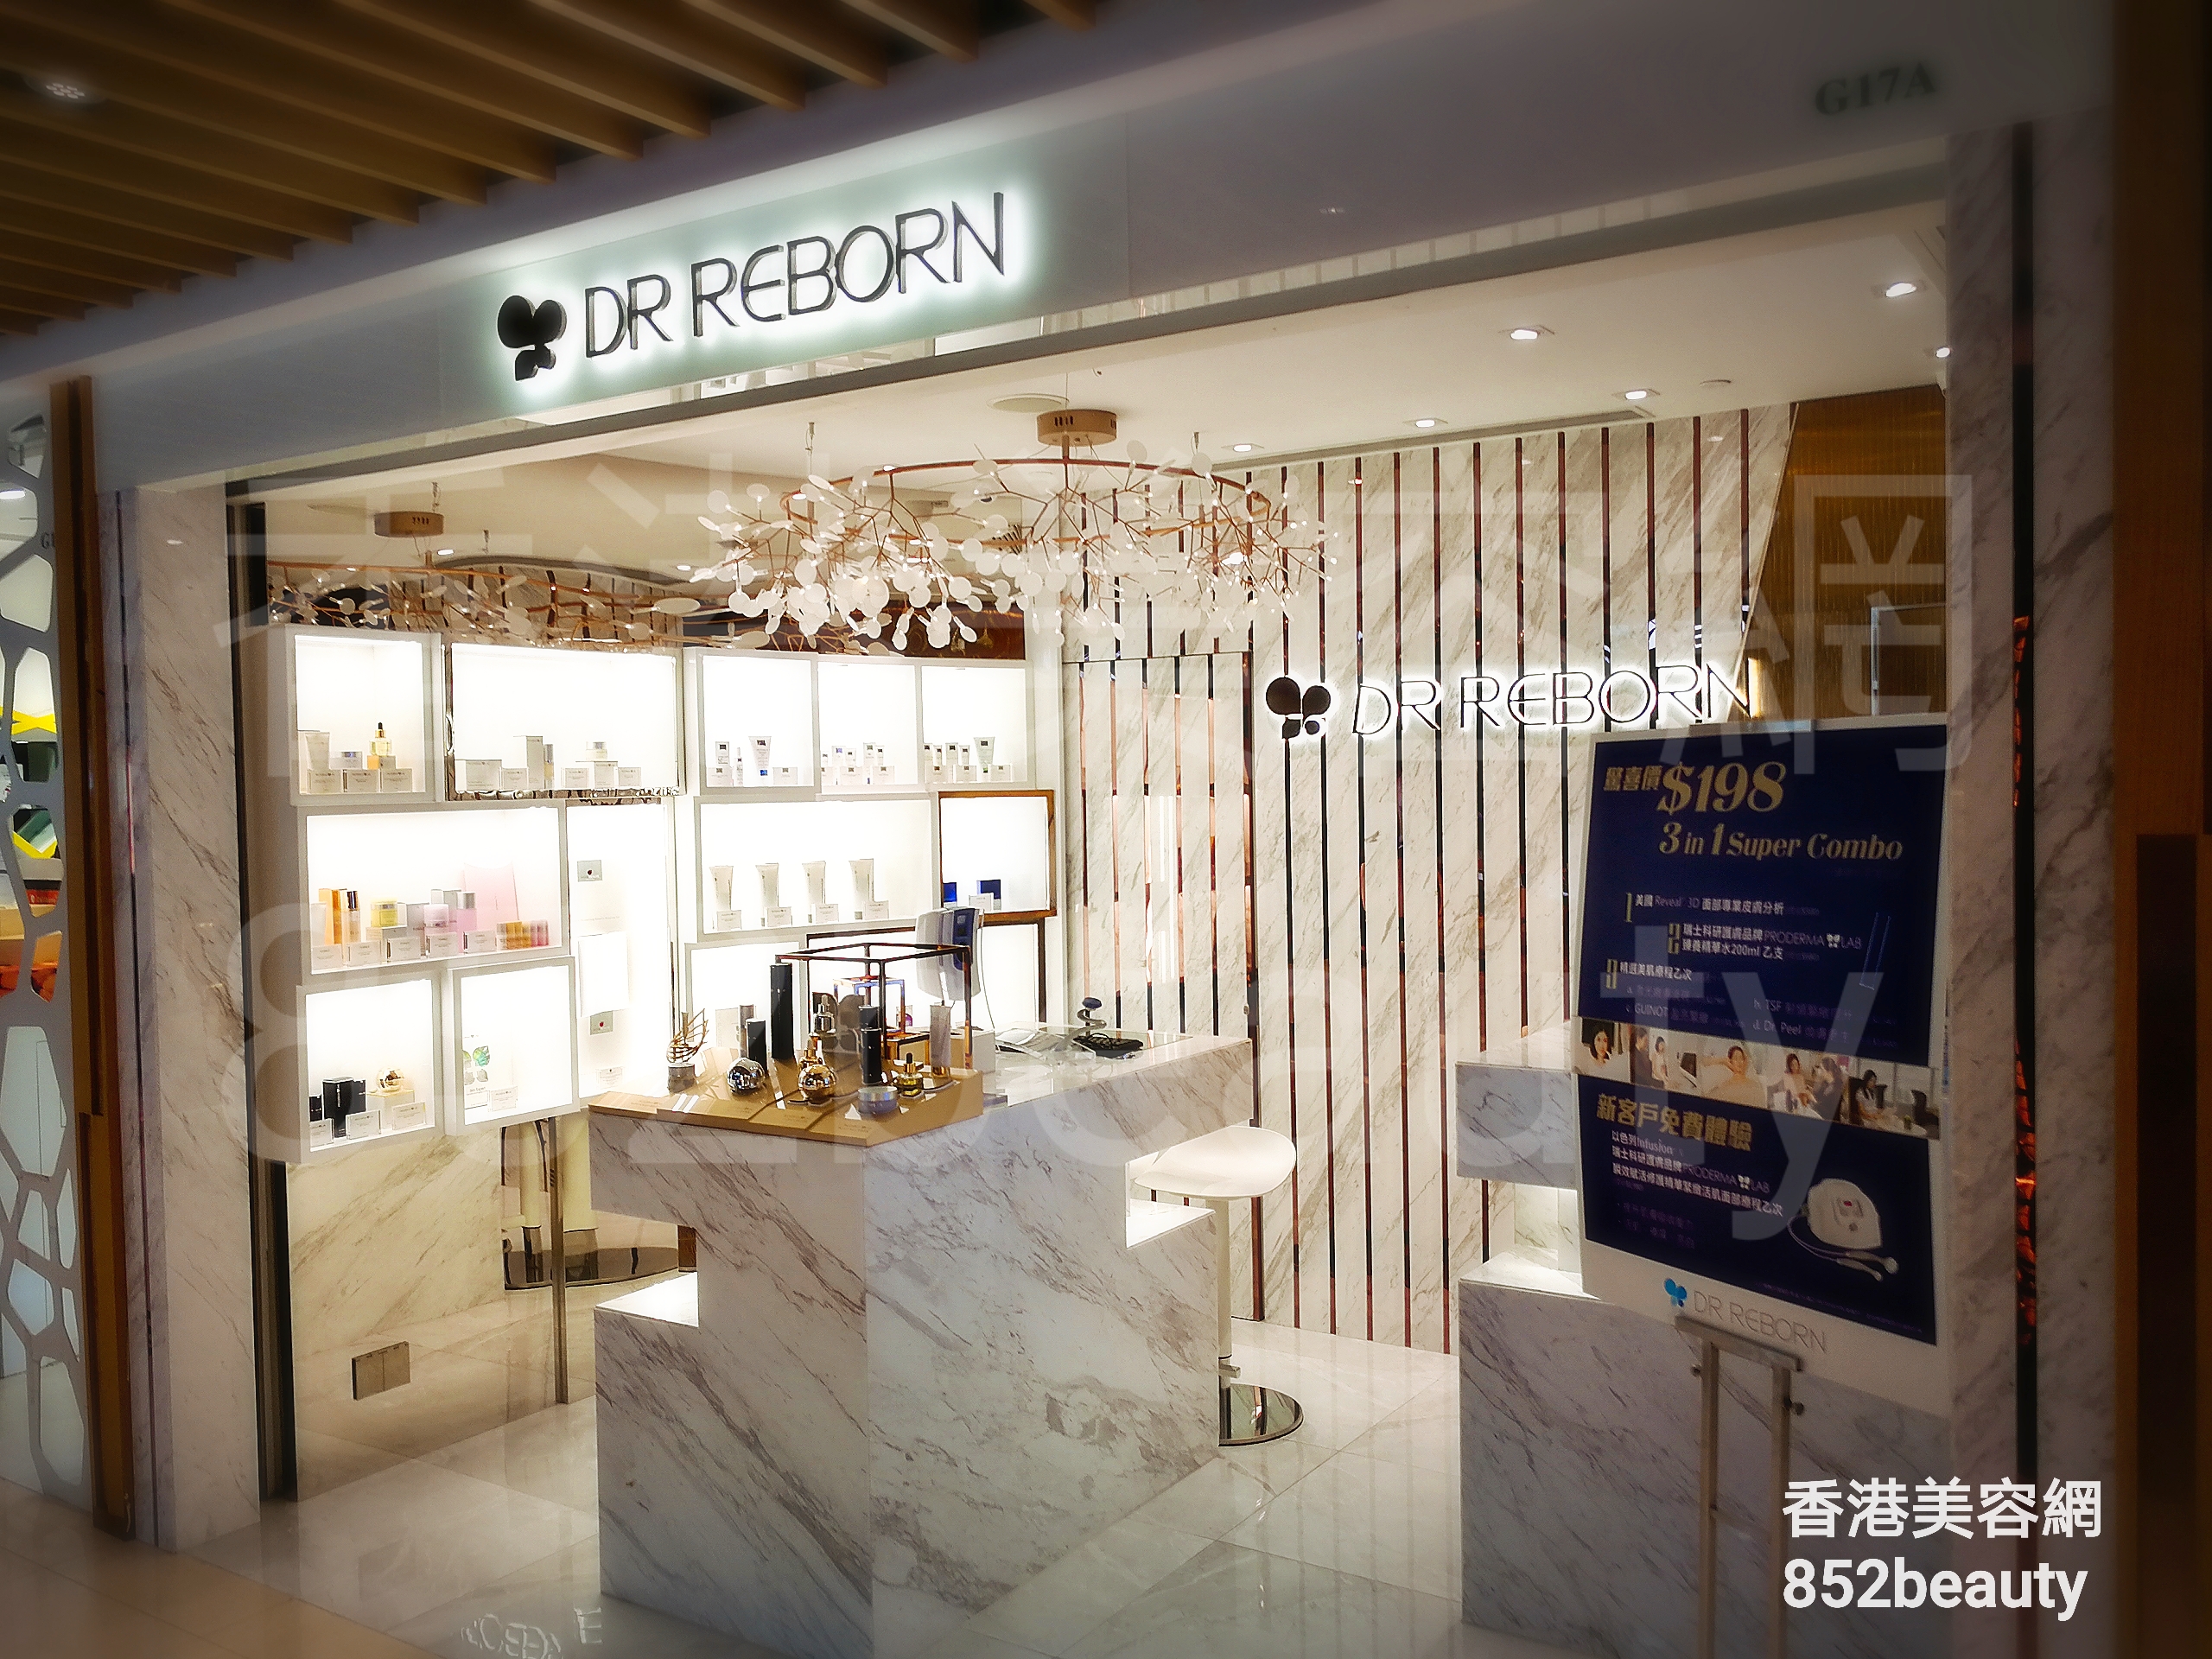 香港美容網 Hong Kong Beauty Salon 美容院 / 美容師: DR REBORN (荃灣)